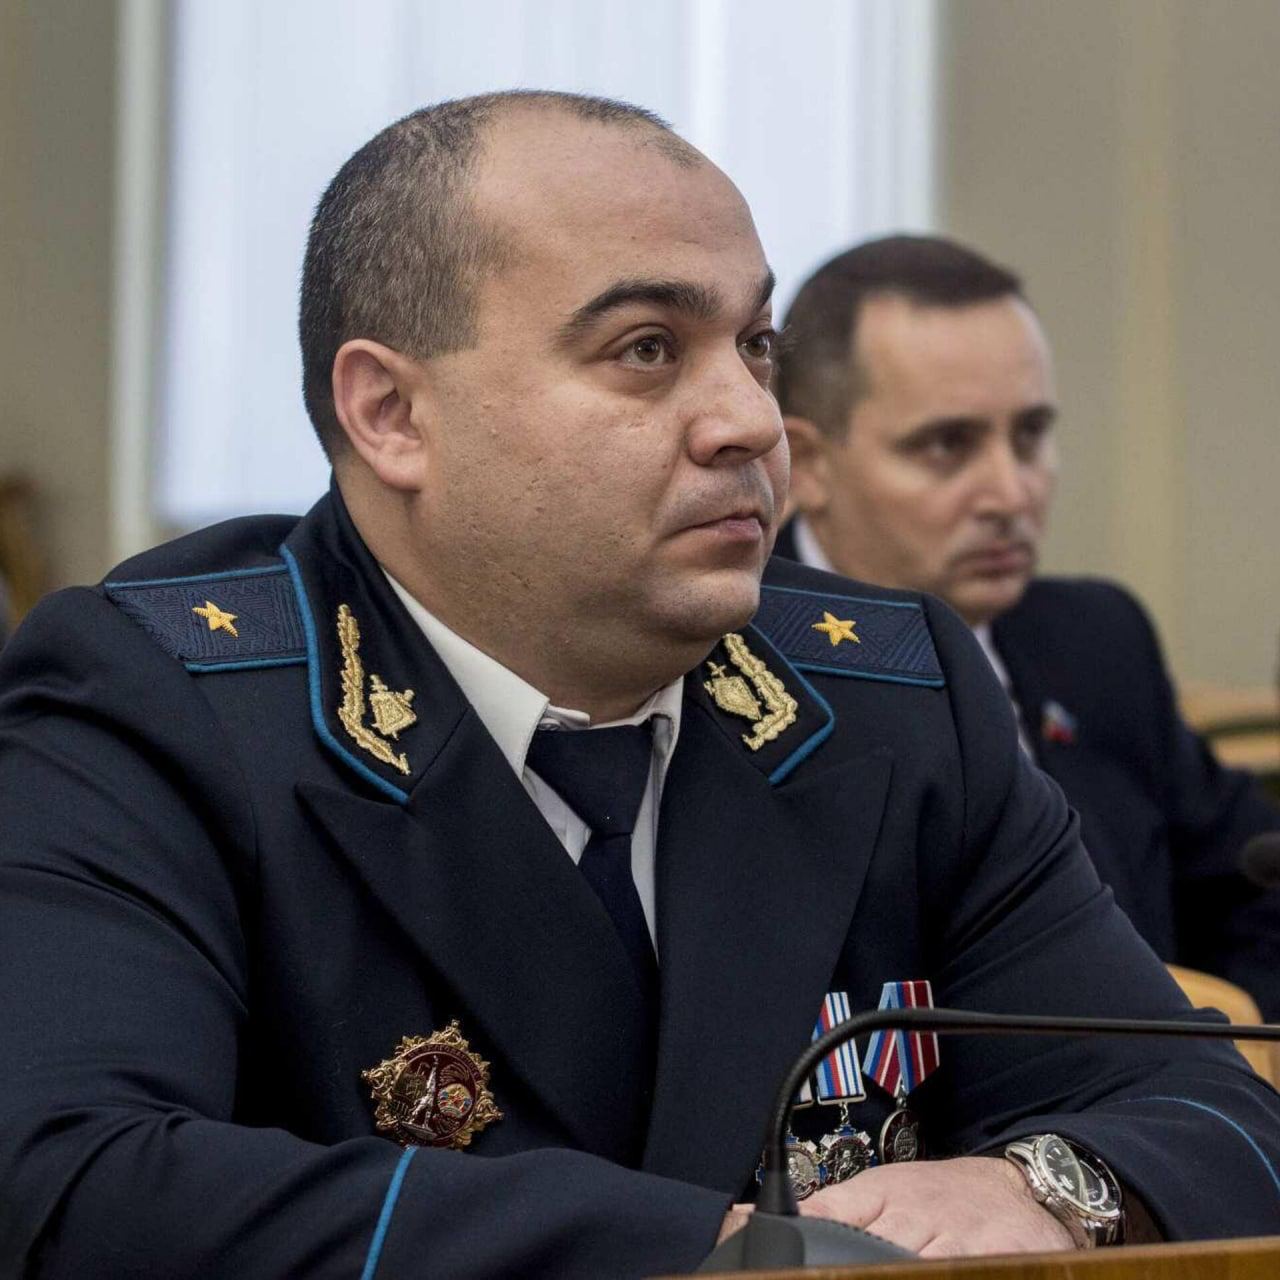 Так называемый «генпрокурор ЛНР» Сергей Горенко погиб при взрыве в Луганске, сообщили «Интерфаксу» в «экстренных службах города»